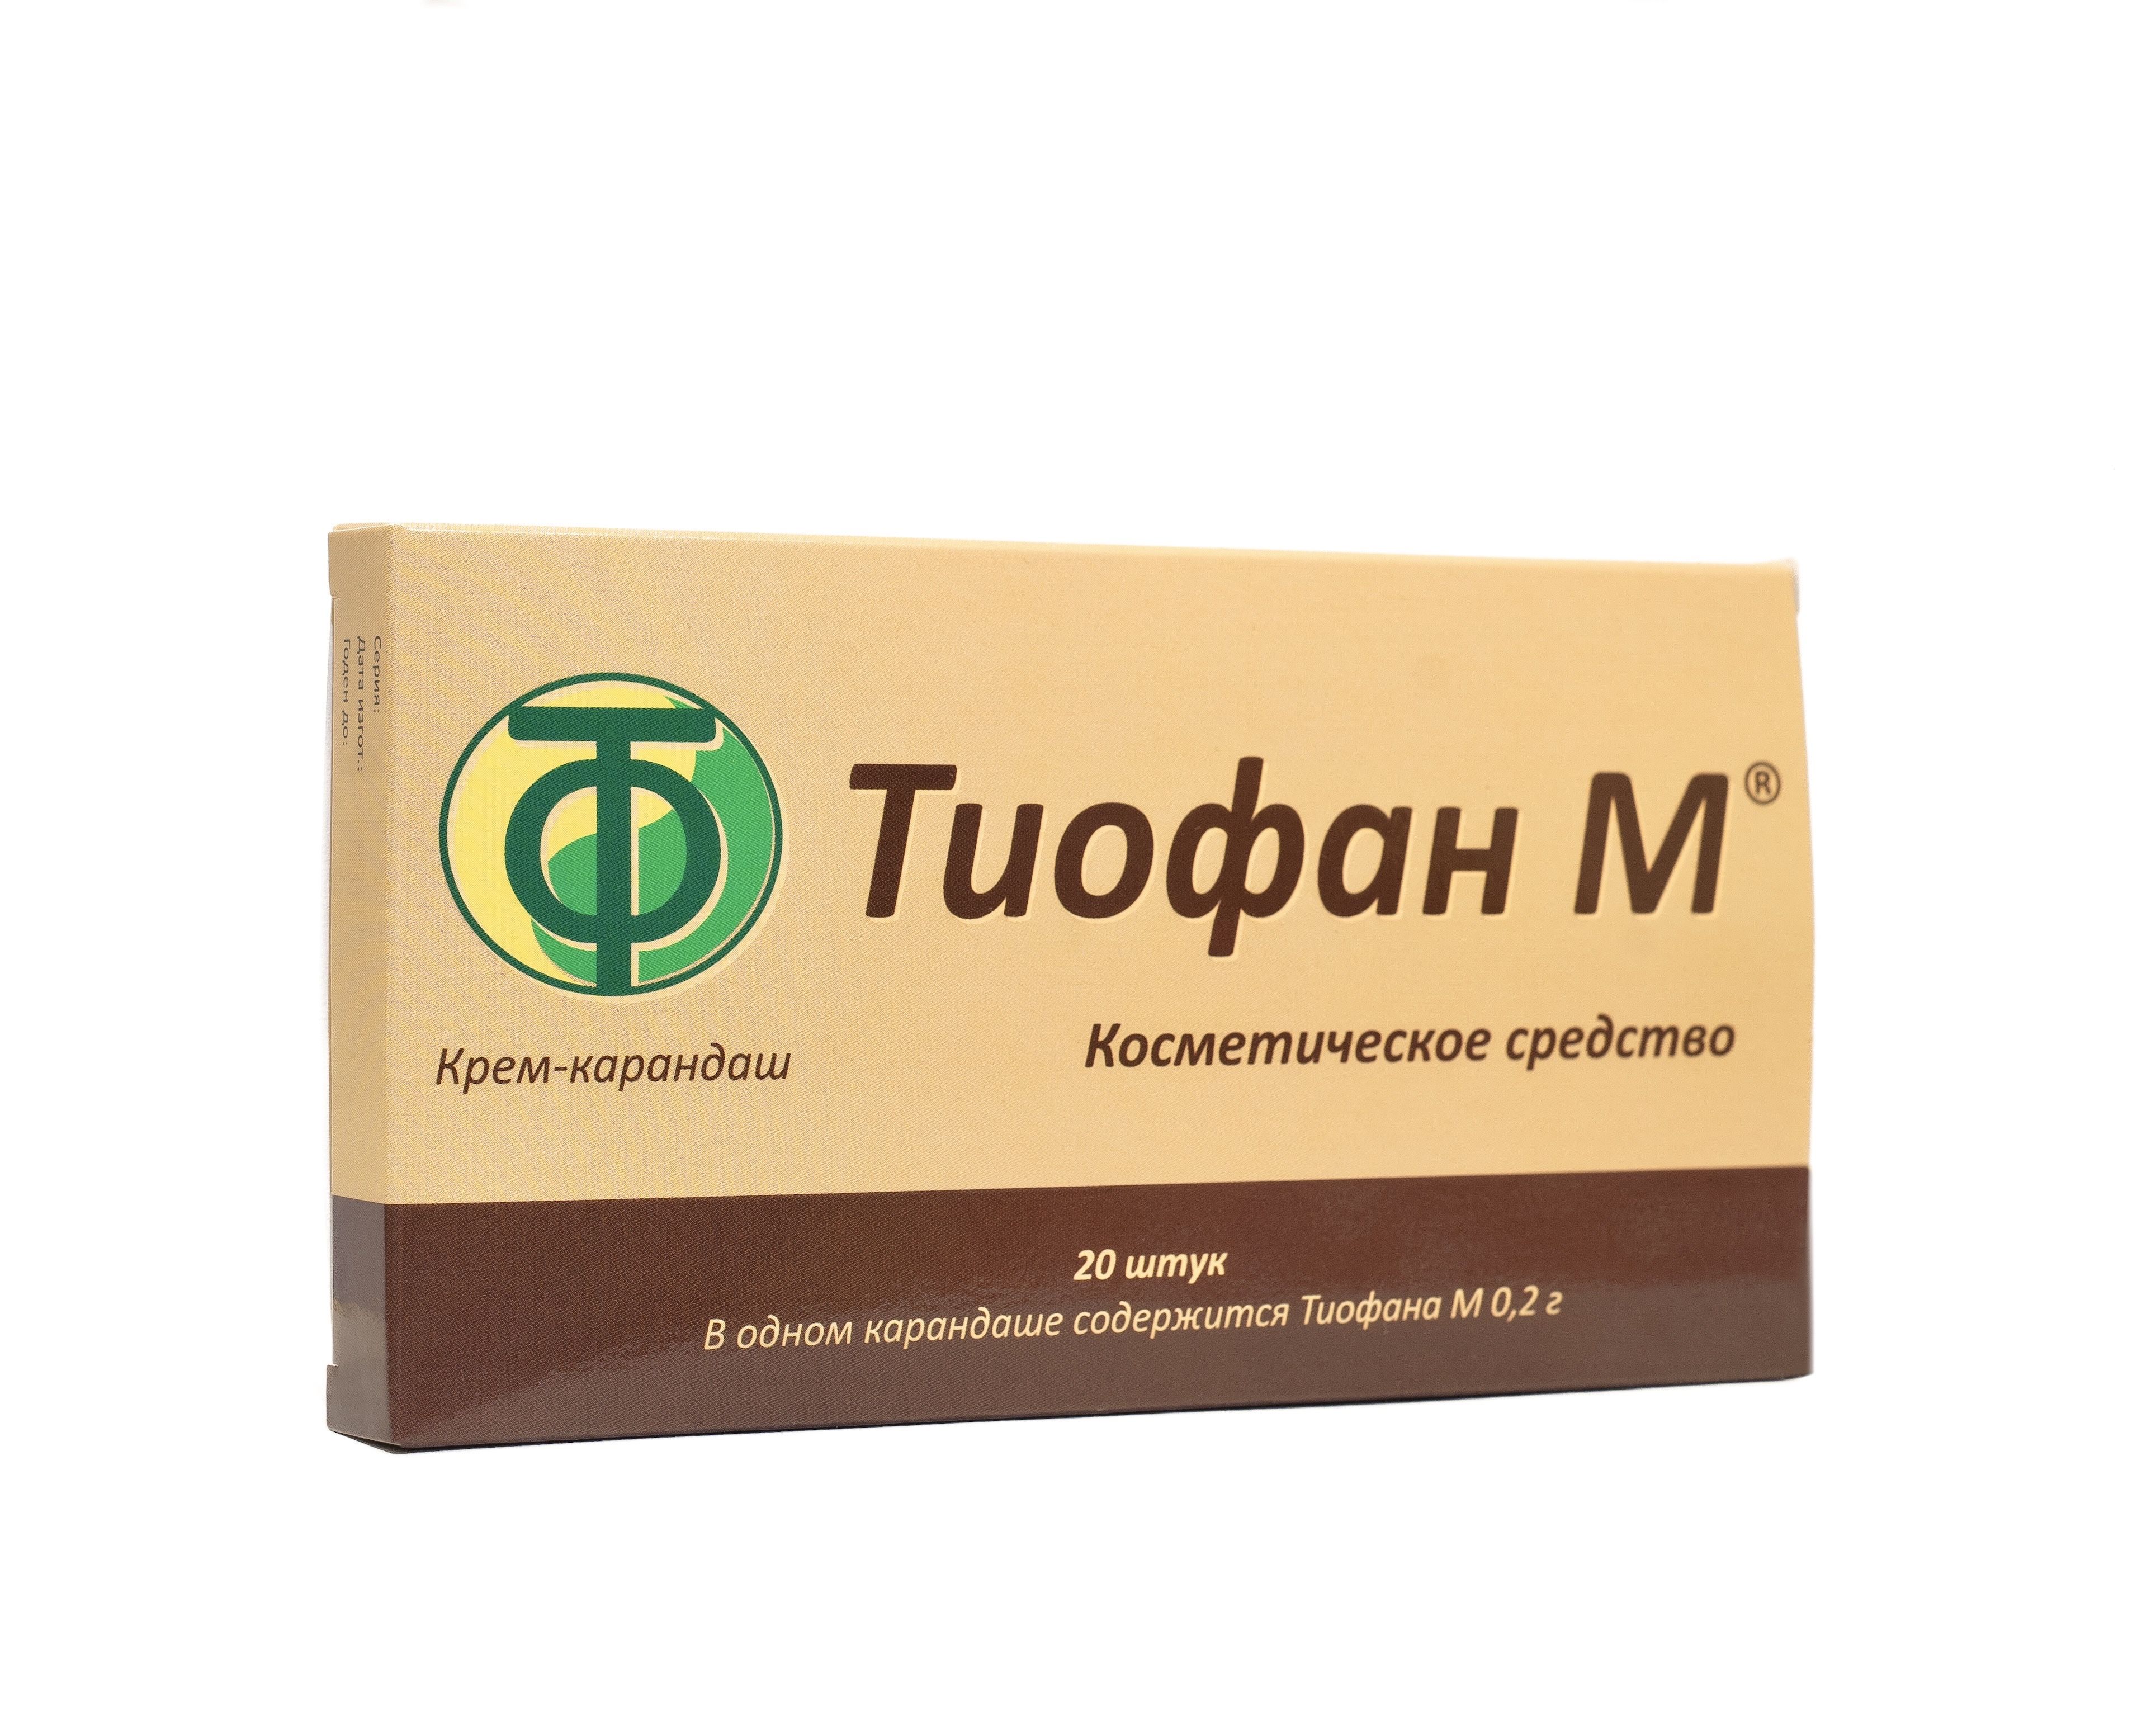 Тиофан м производитель. Тиофан лекарство. Тиофан м 200мг. Гем крем-карандаш инструкция. Тиофан купить в Новосибирске у производителя Кольцово цена.